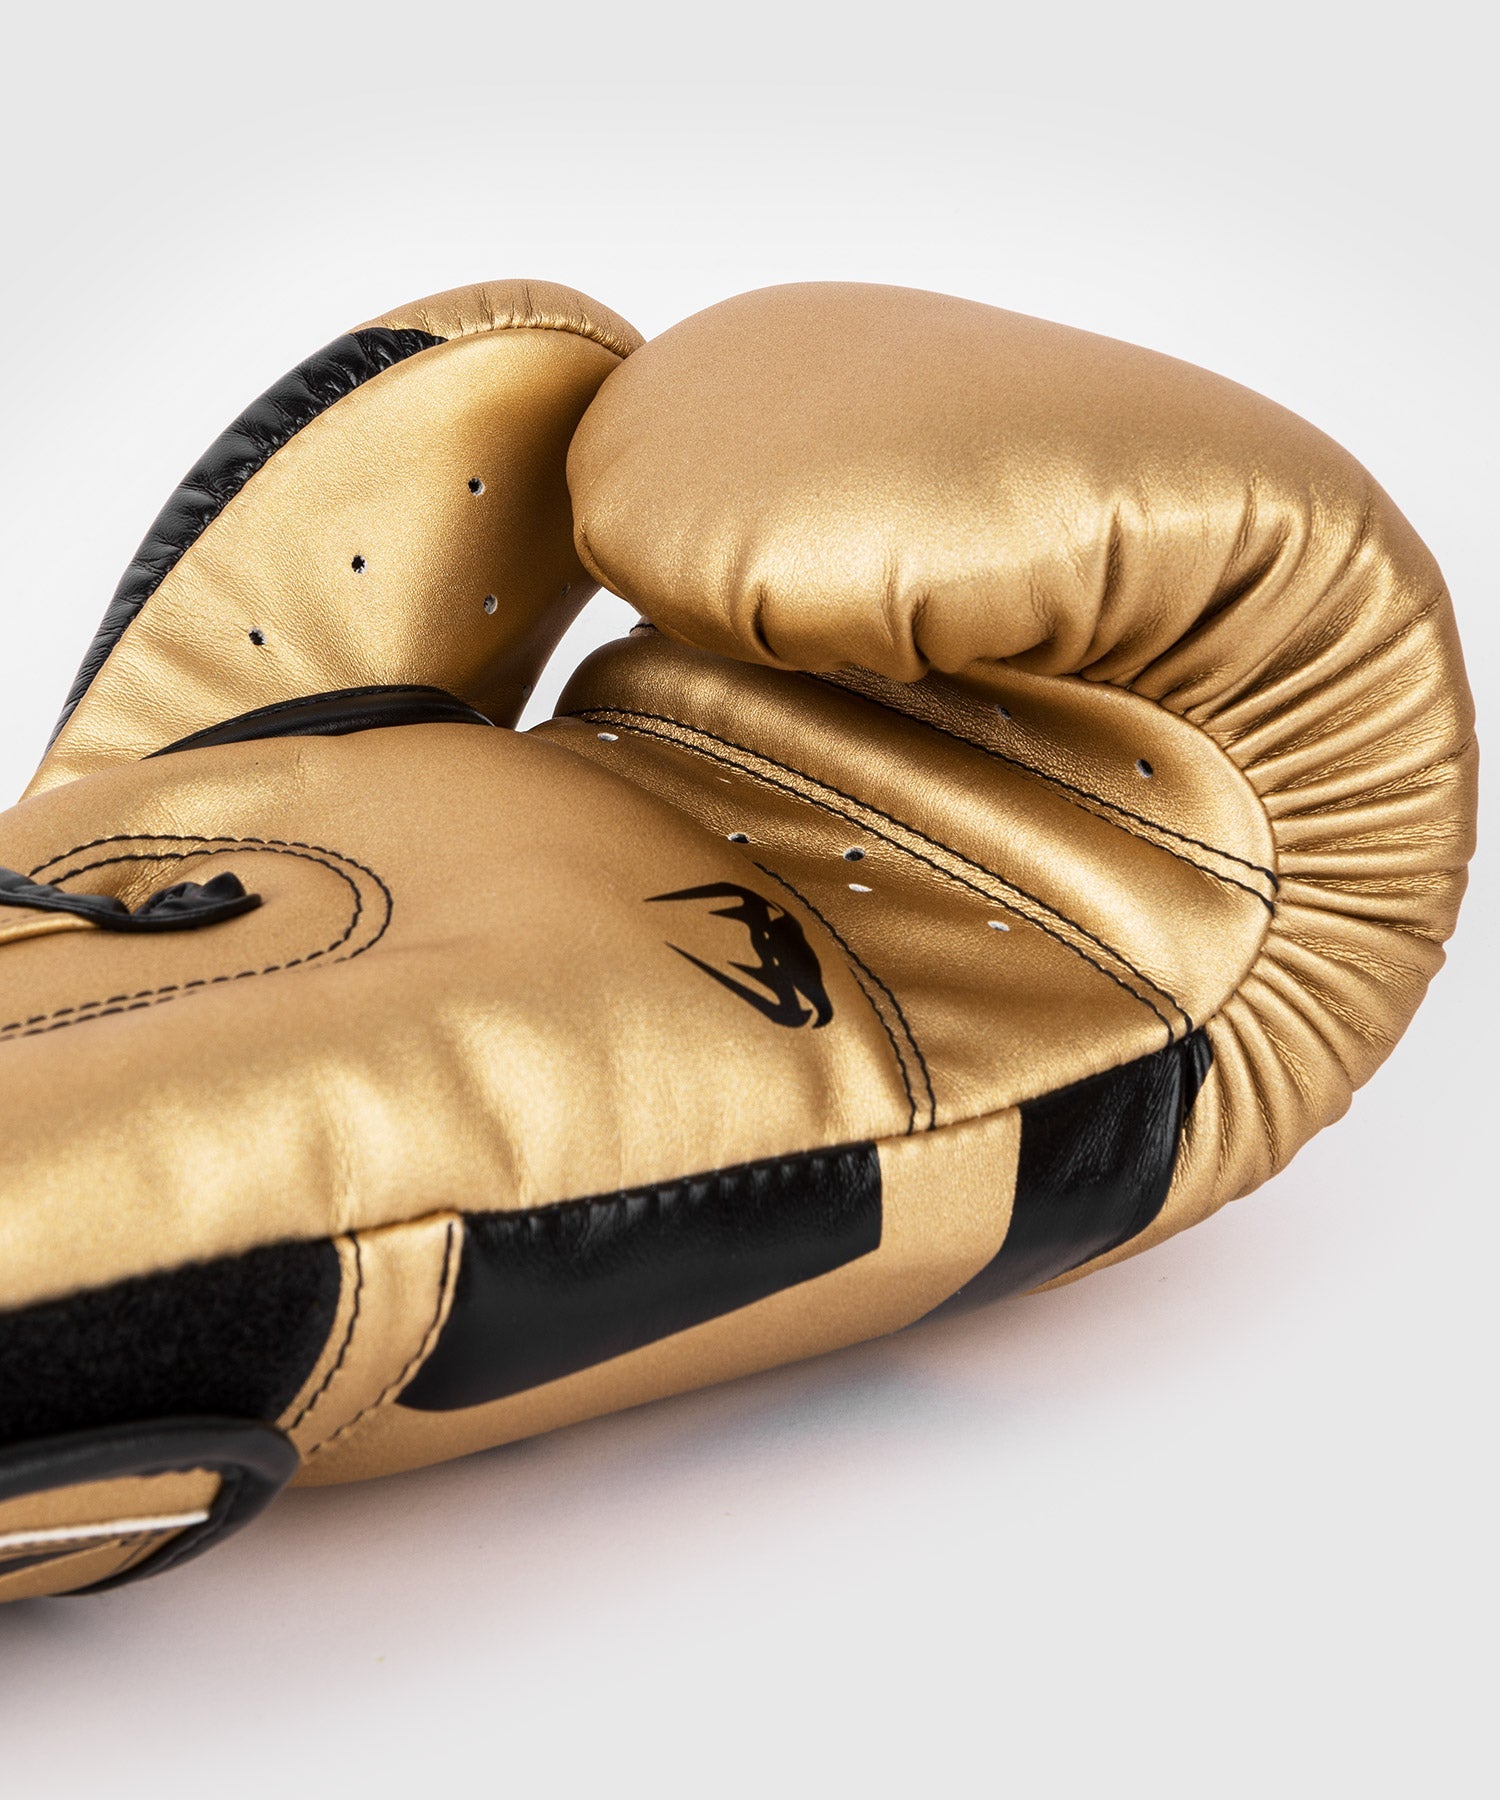 Venum Skull Boxing Gloves Black Gold - FIGHTWEAR SHOP EUROPE